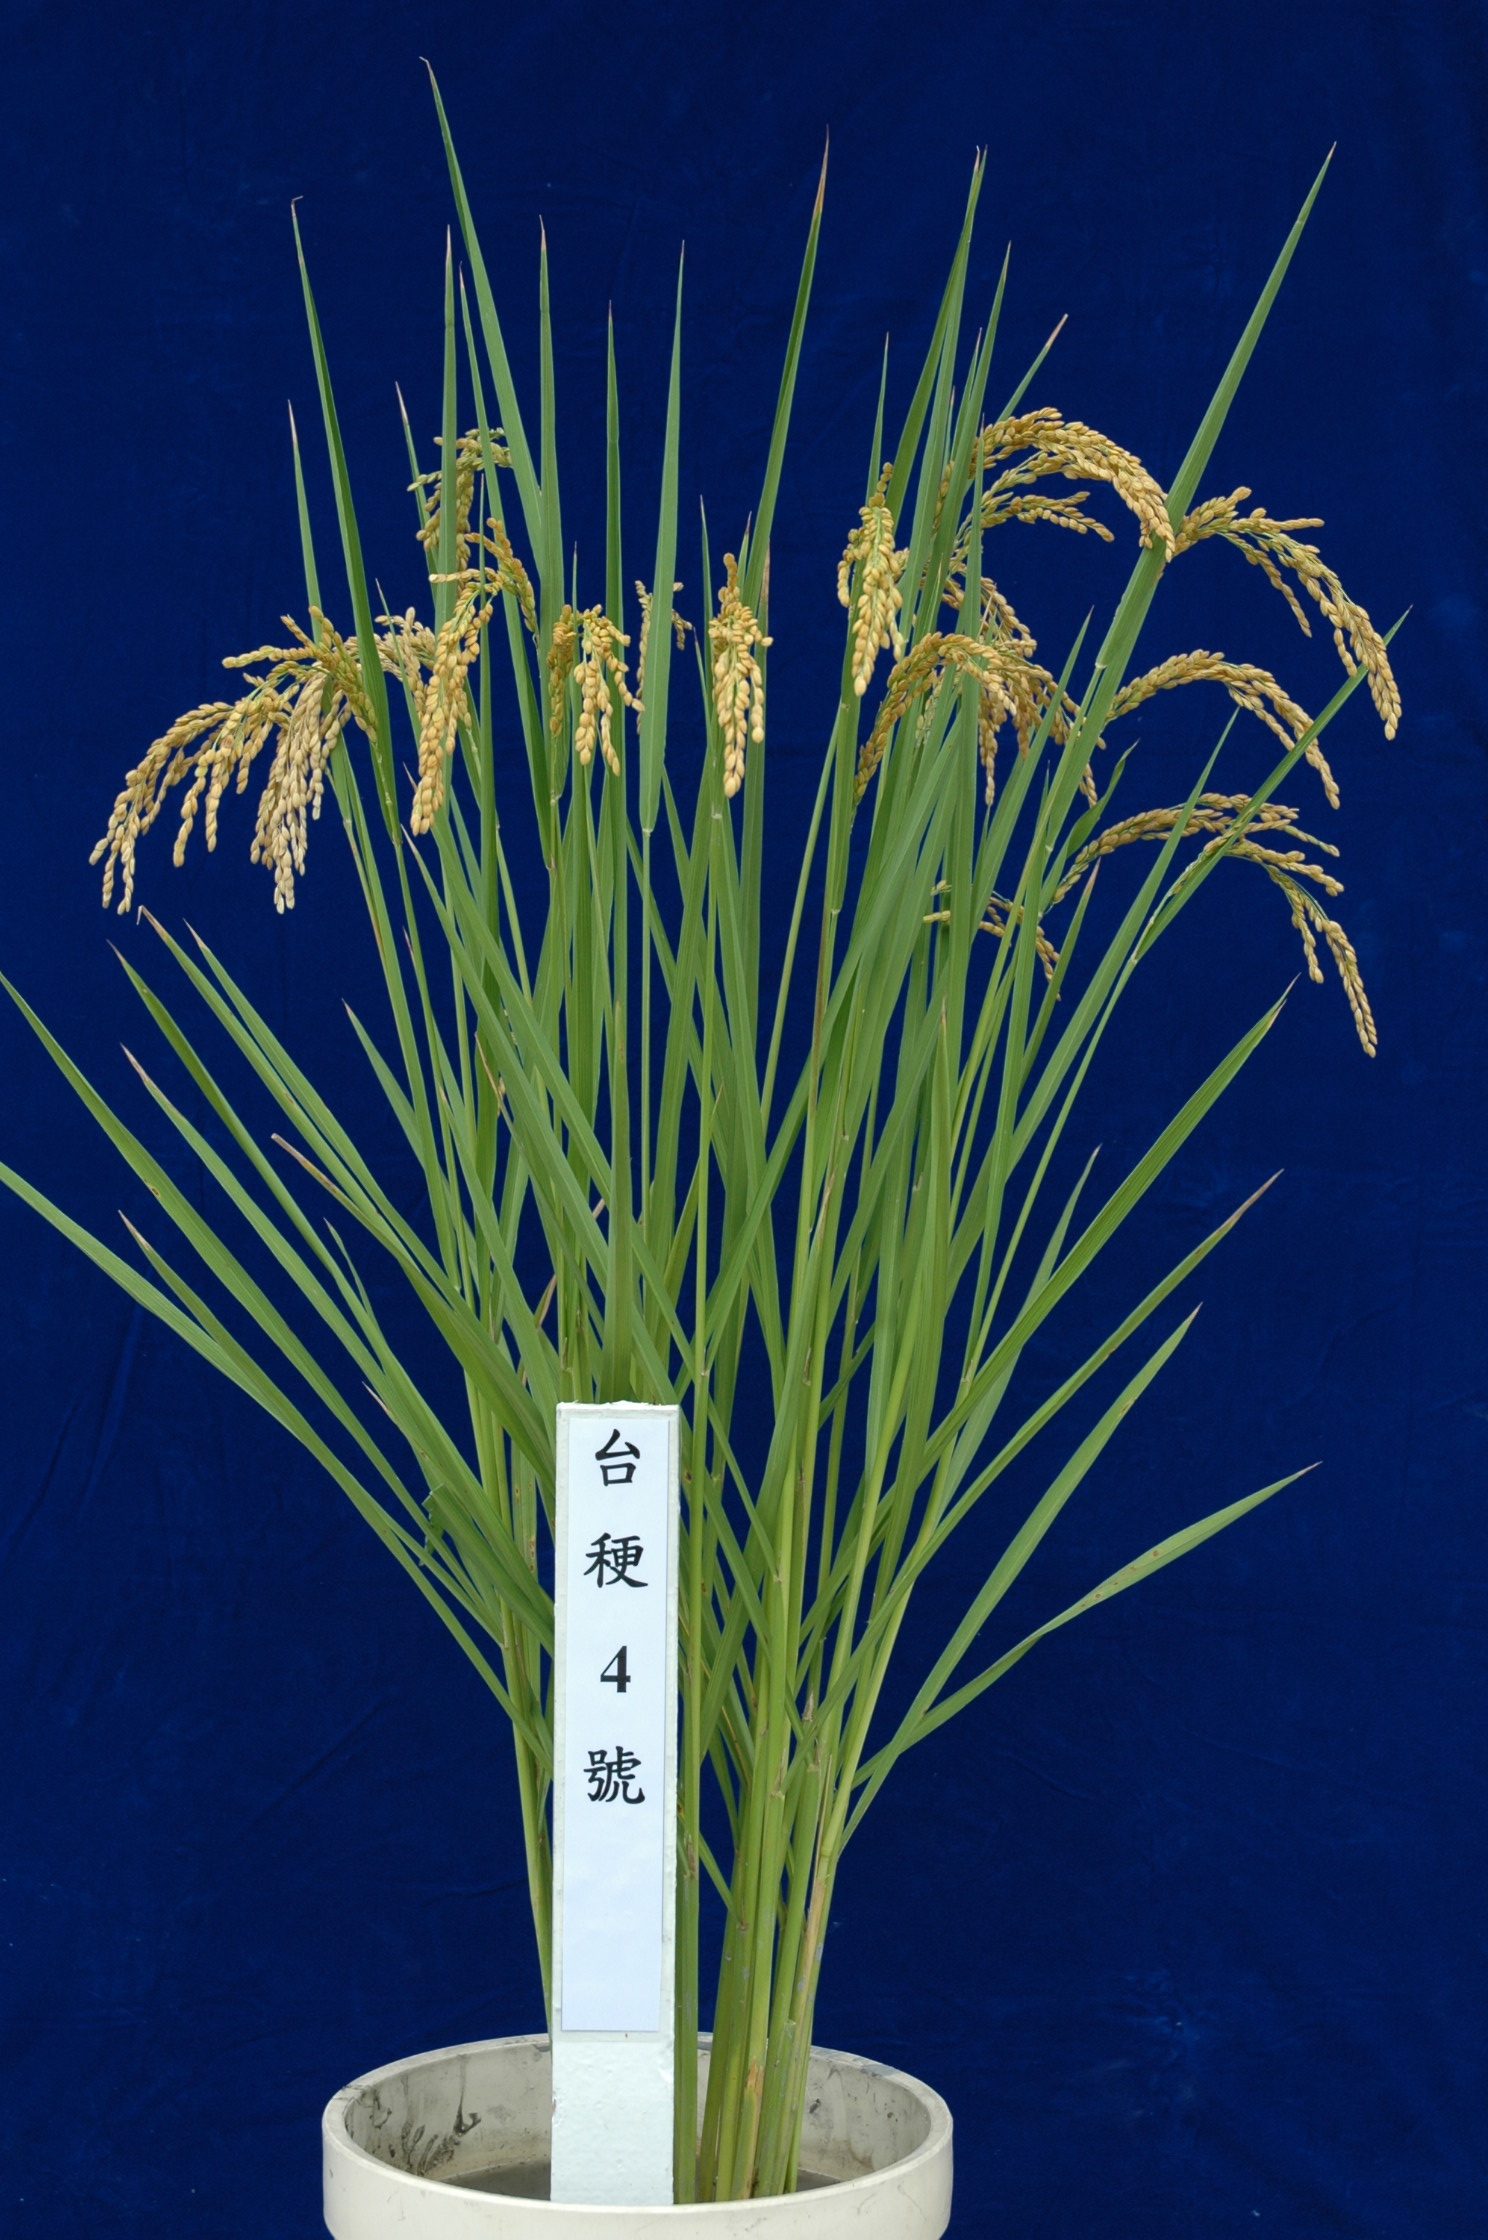 水稻台稉4號稻種繁殖及採種技術